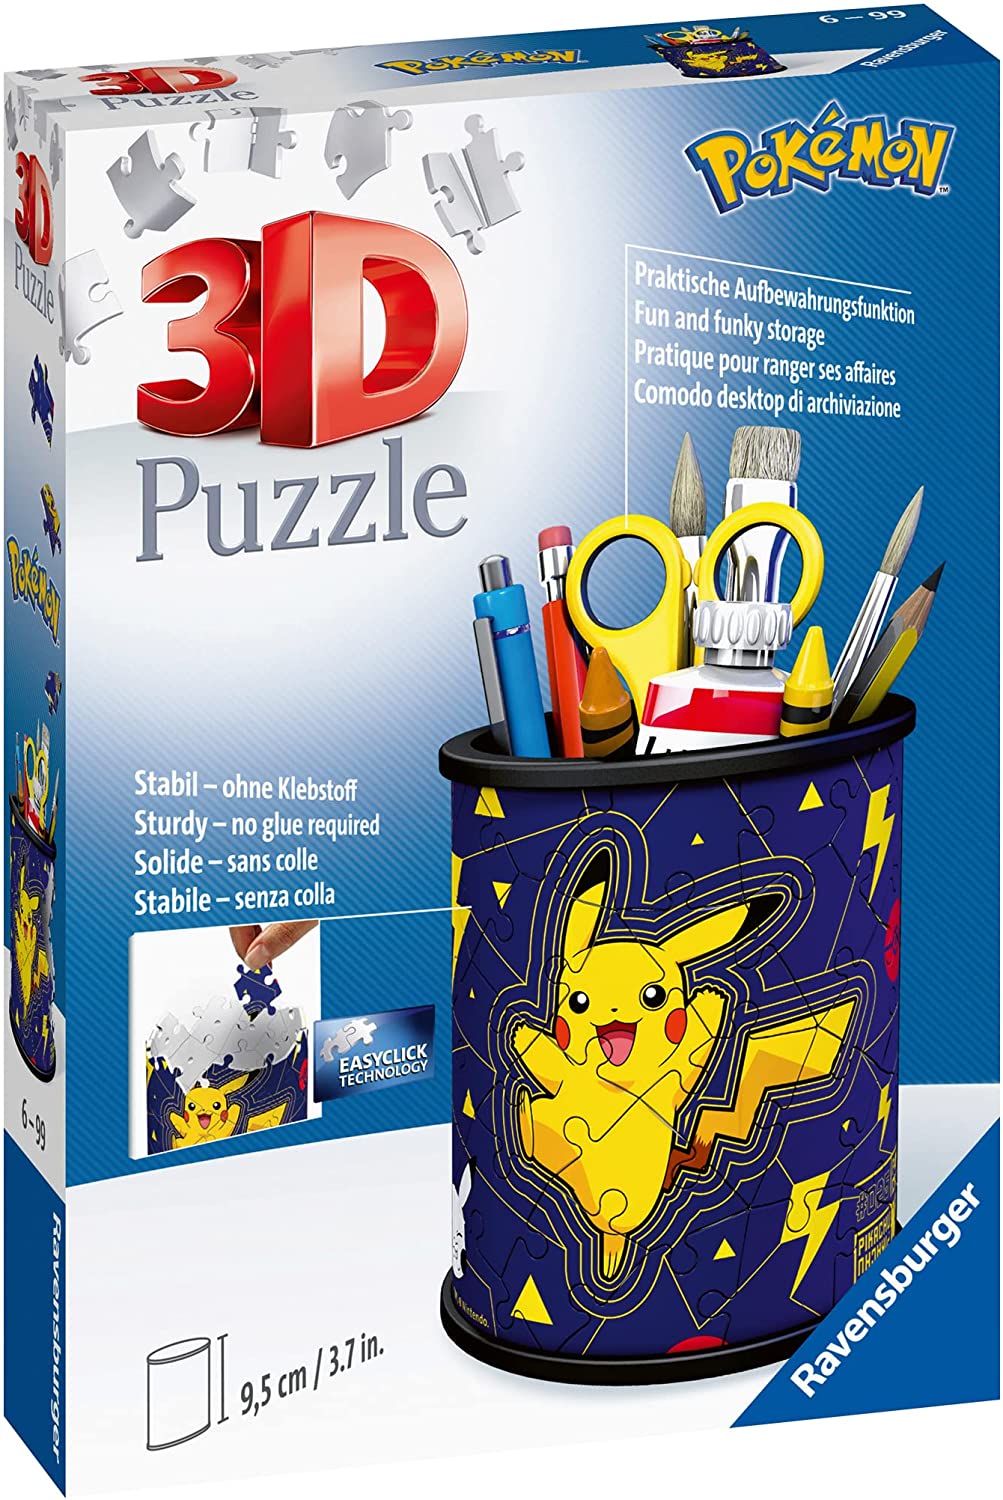 Ravensburger Pokémon Pencil Holder: 54 Piece 3D Jigsaw Puzzle